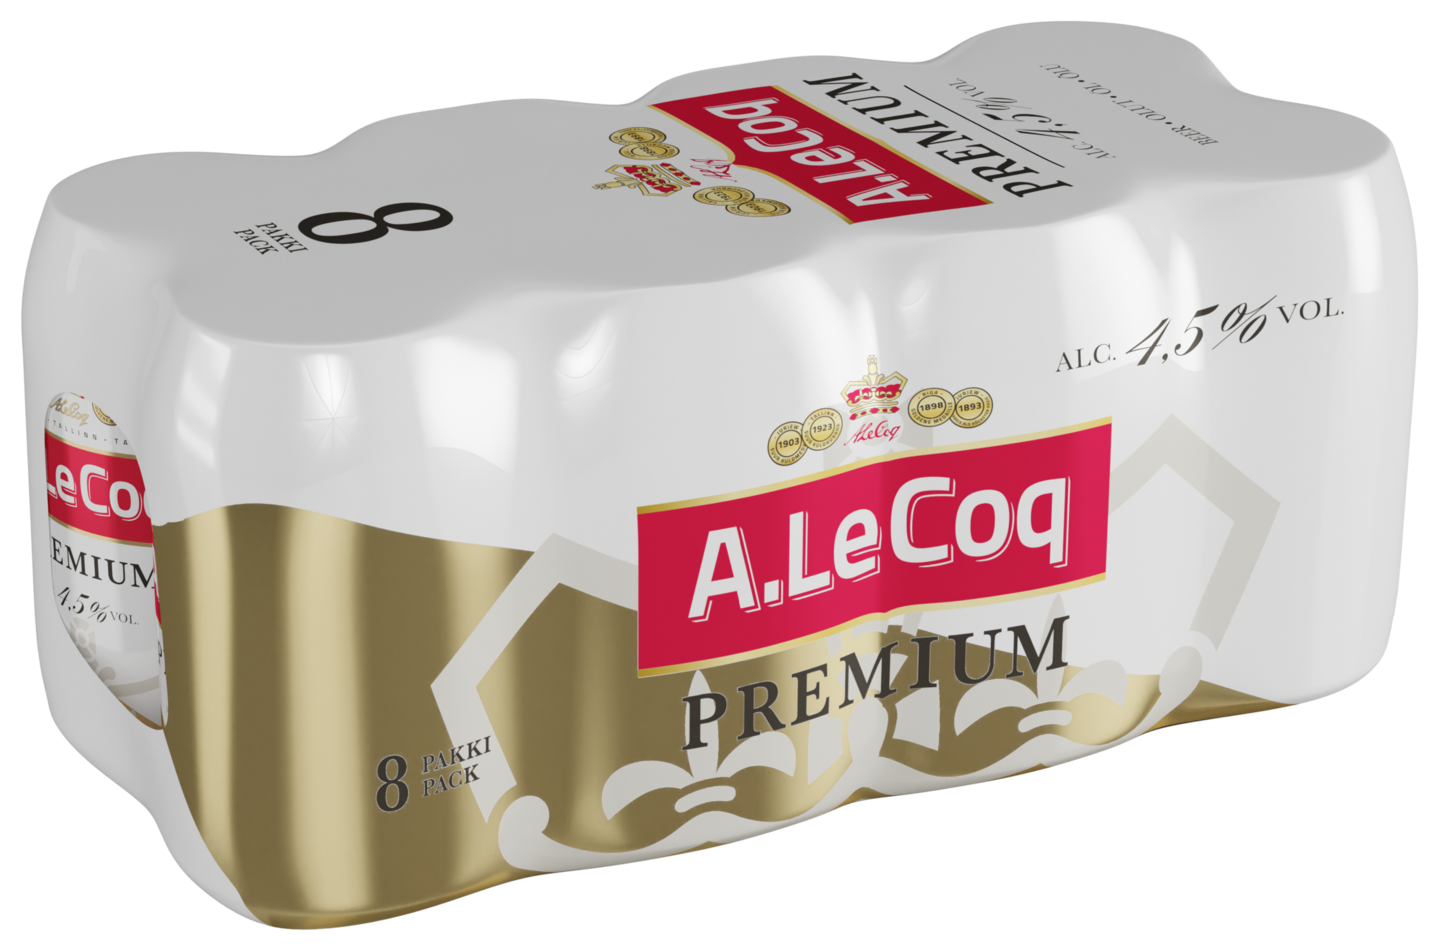 A.Le Coq Premium 4,5% 0,33l 8-pack